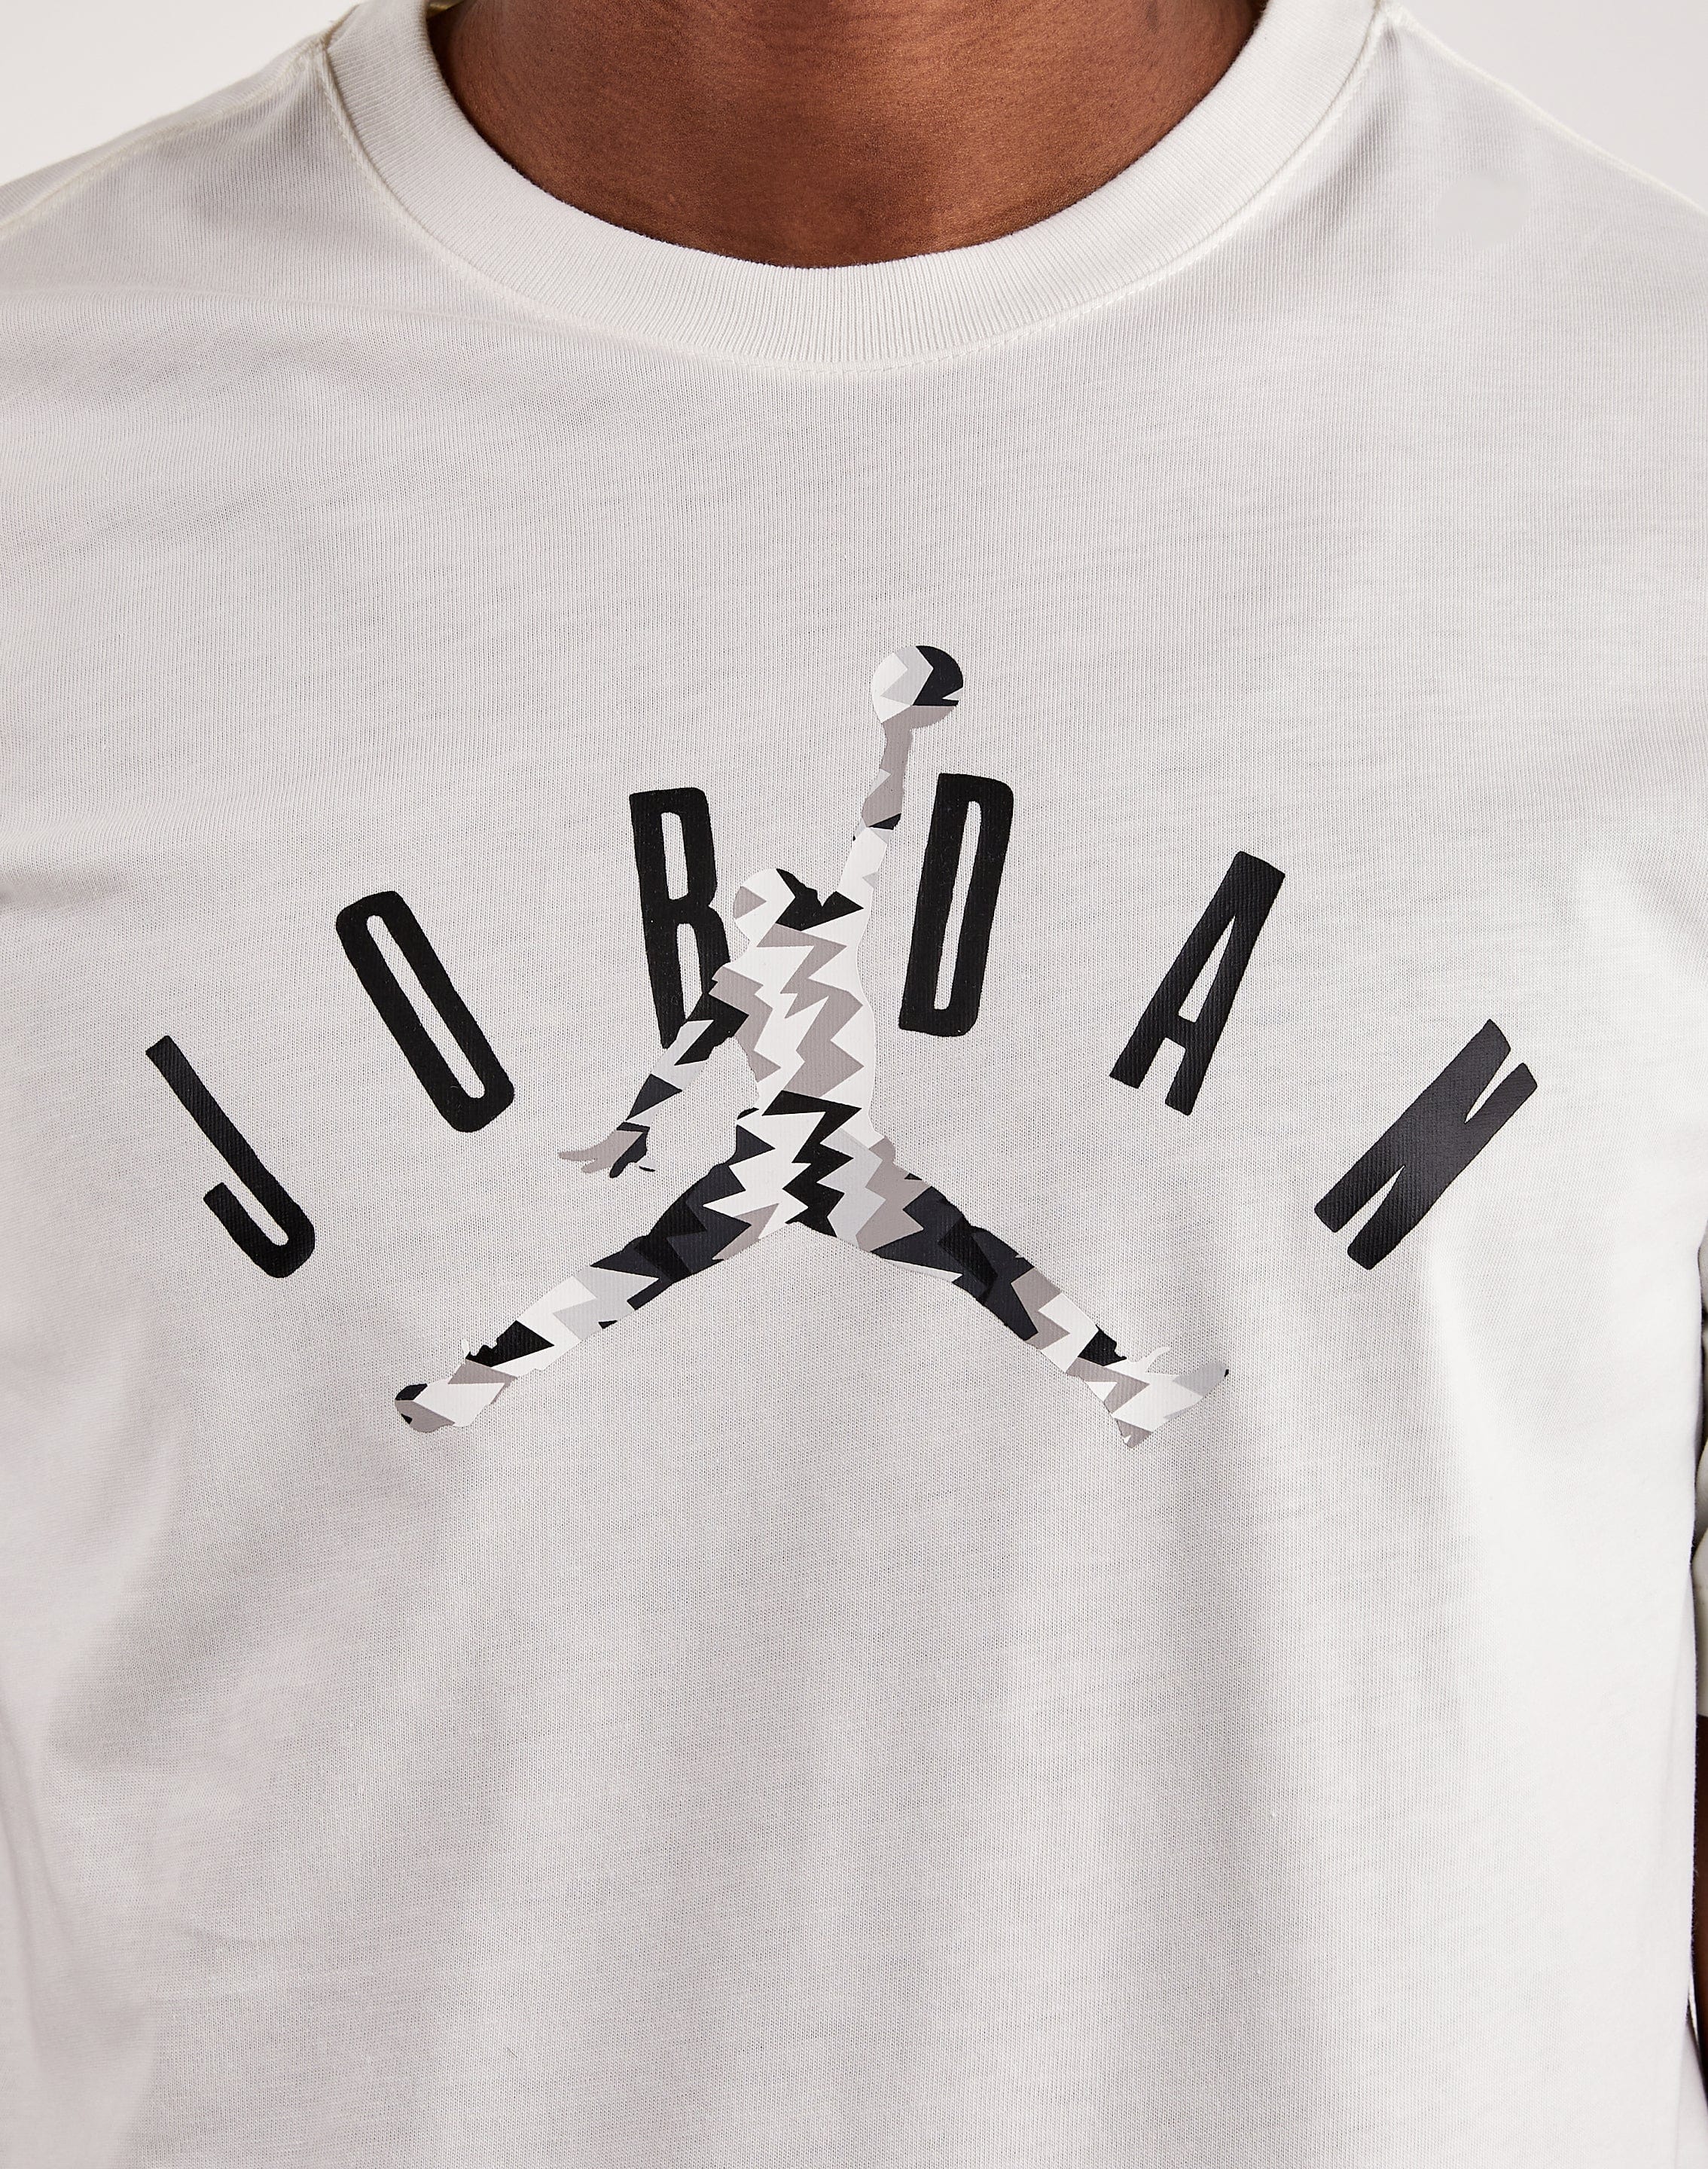 Jordan Flight MVP Tee – DTLR